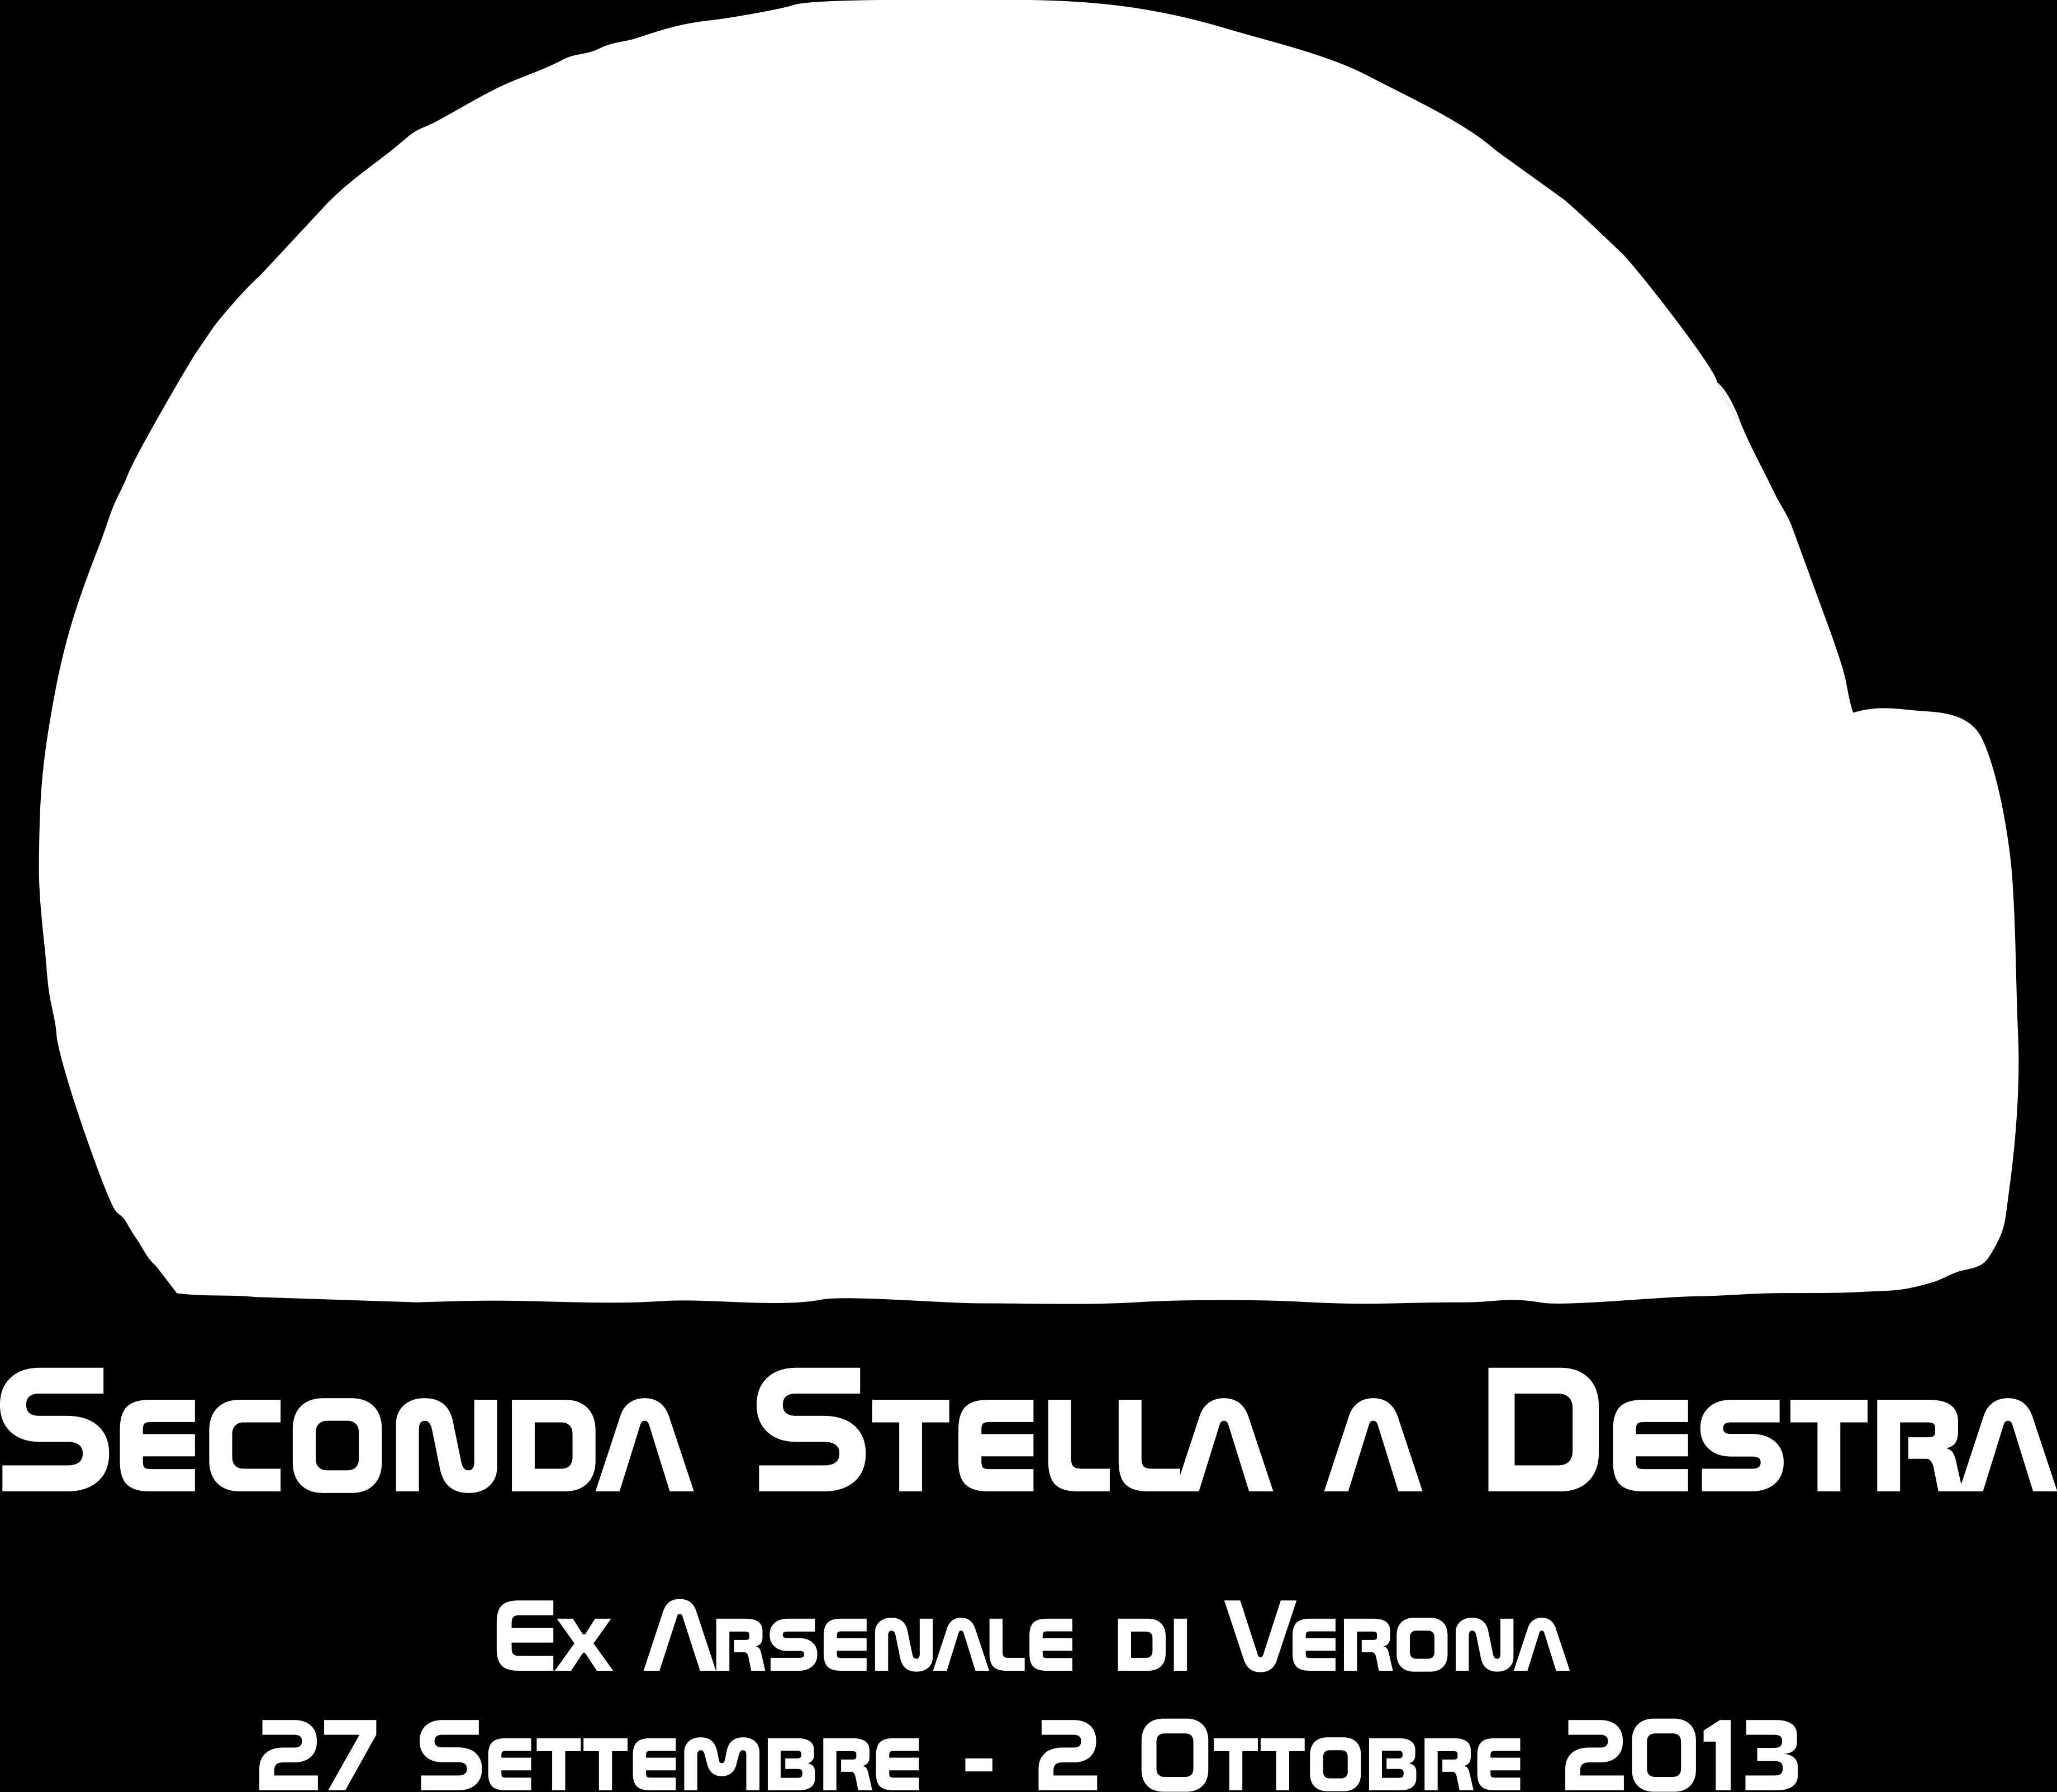 Oggetto: presentazione evento Seconda Stella a Destra che si terrà dal 27 Settembre al 2 Ottobre presso l'ex- Arsenale di Verona Con la presente siamo a proporre il programma di massima dell'evento